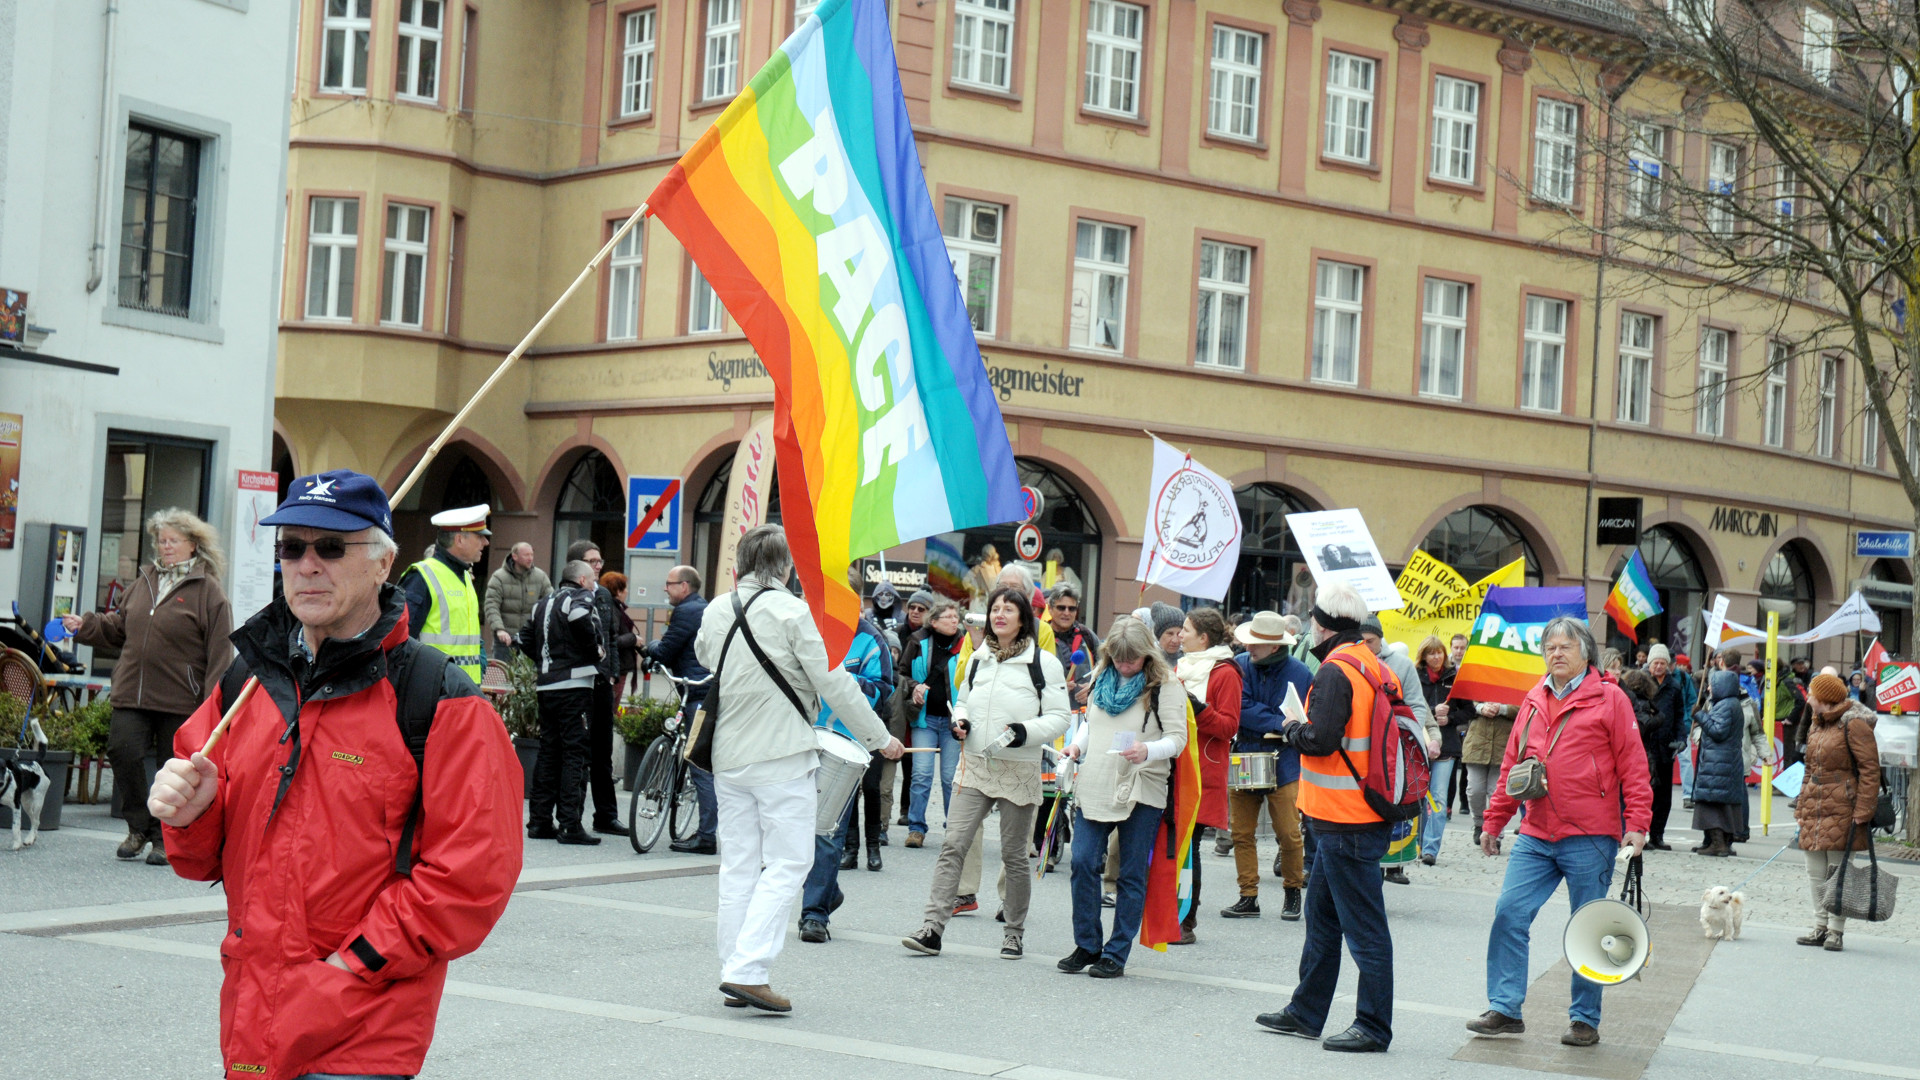 Internationaler Bodensee-Friedensweg in Bregenz